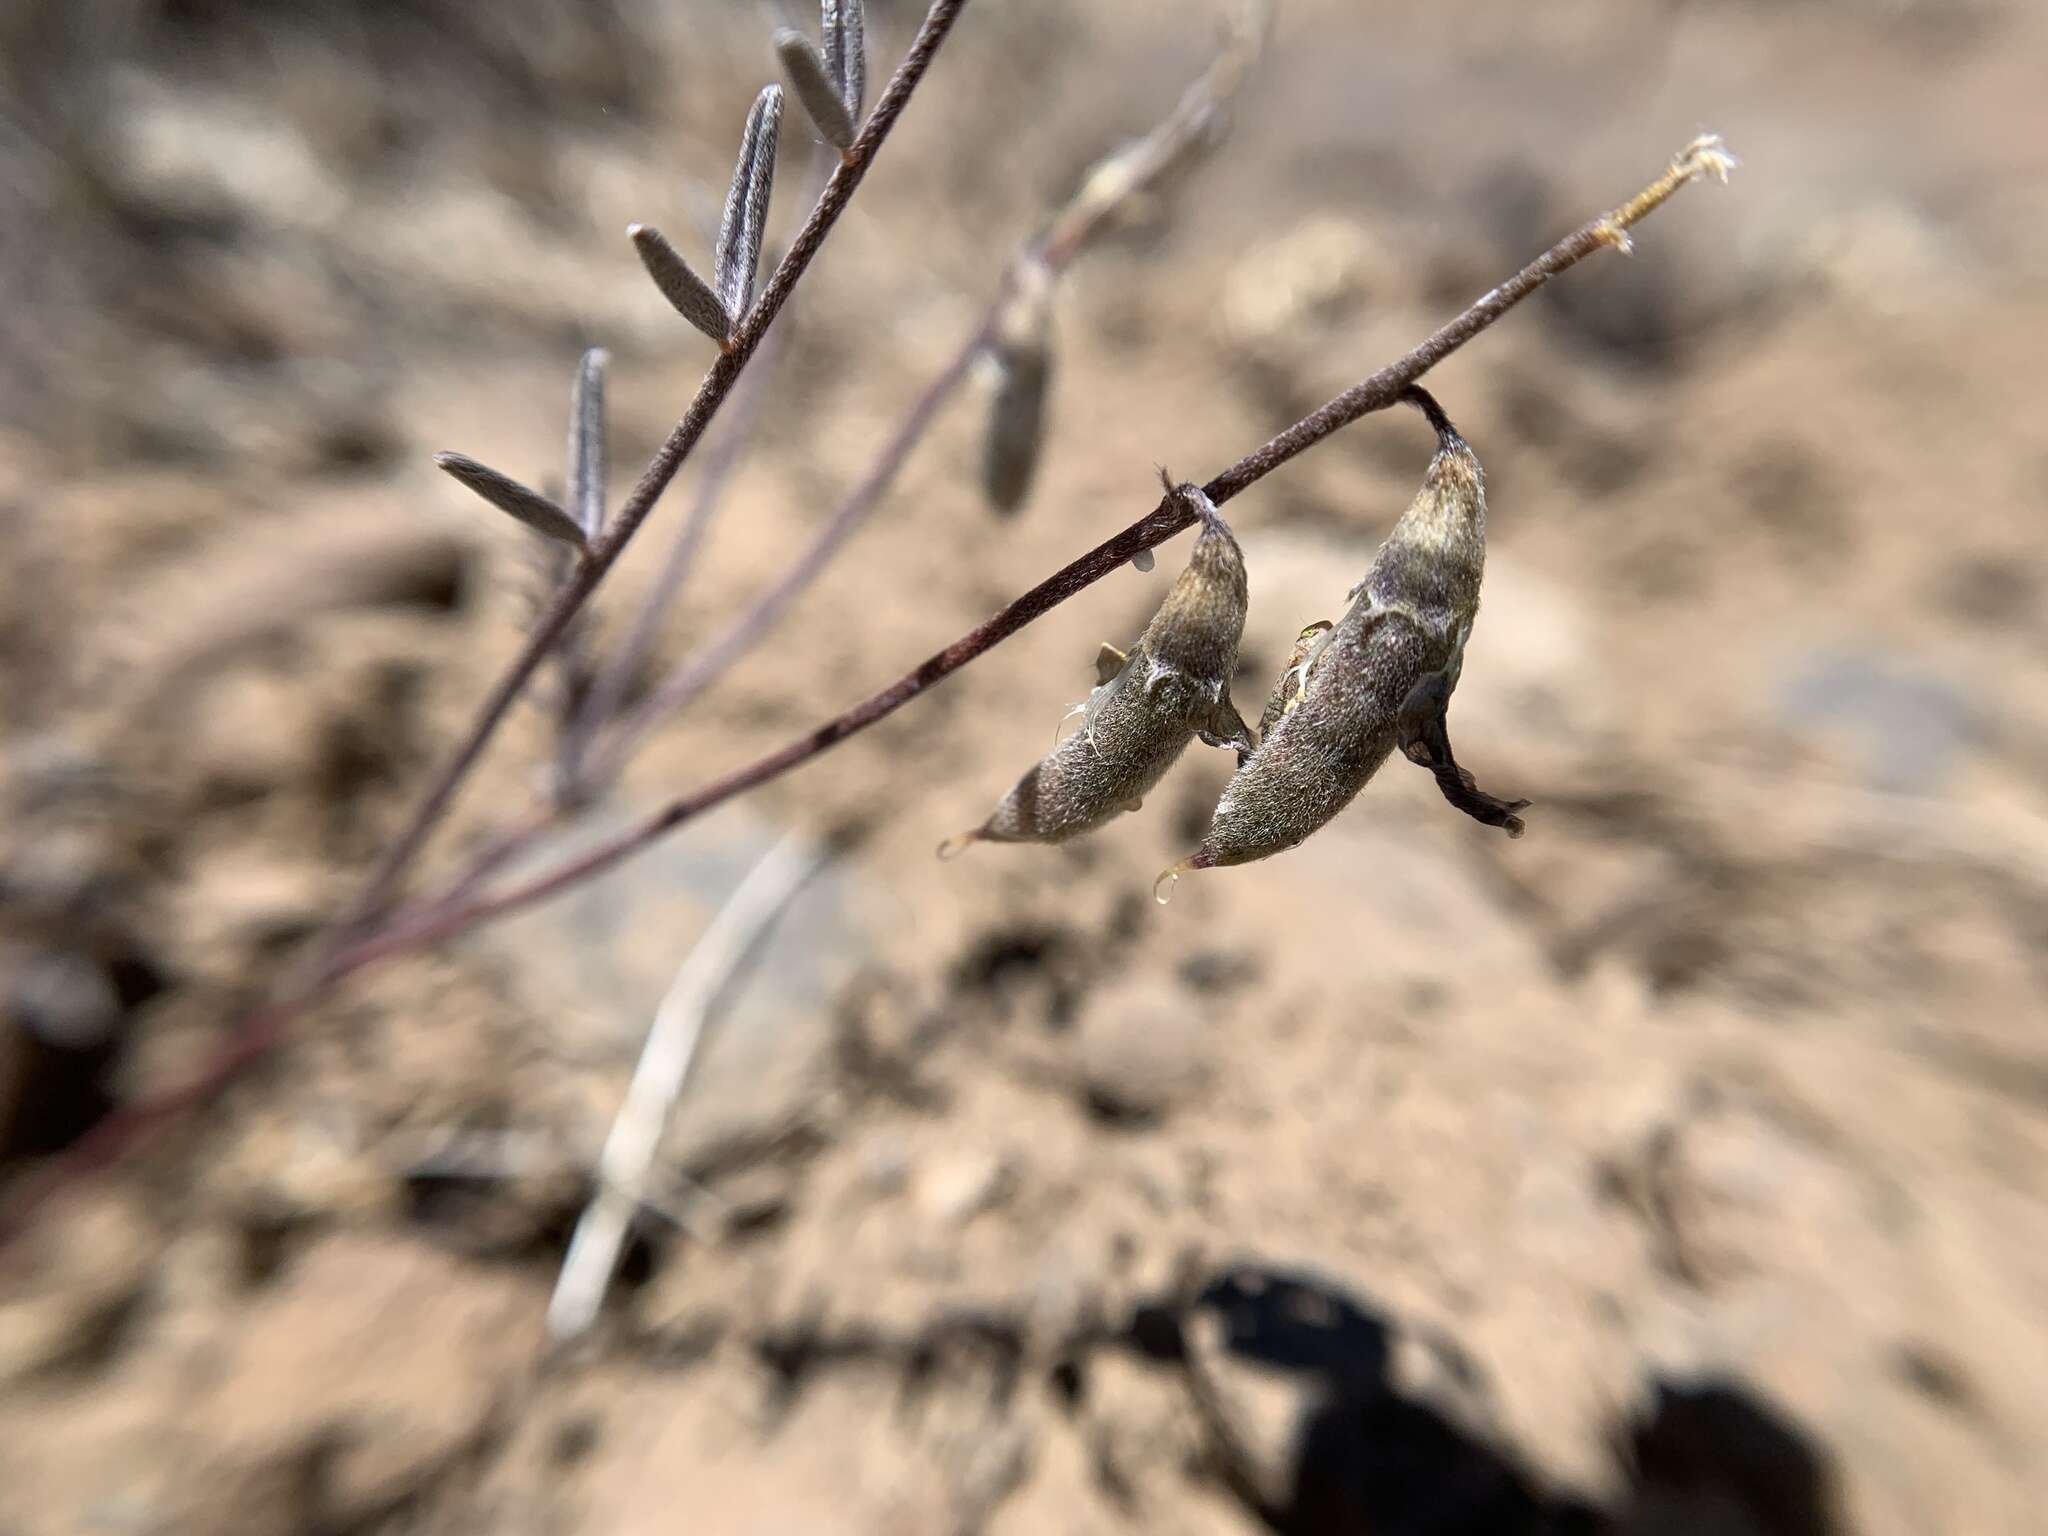 Imagem de Astragalus atratus var. mensanus M. E. Jones